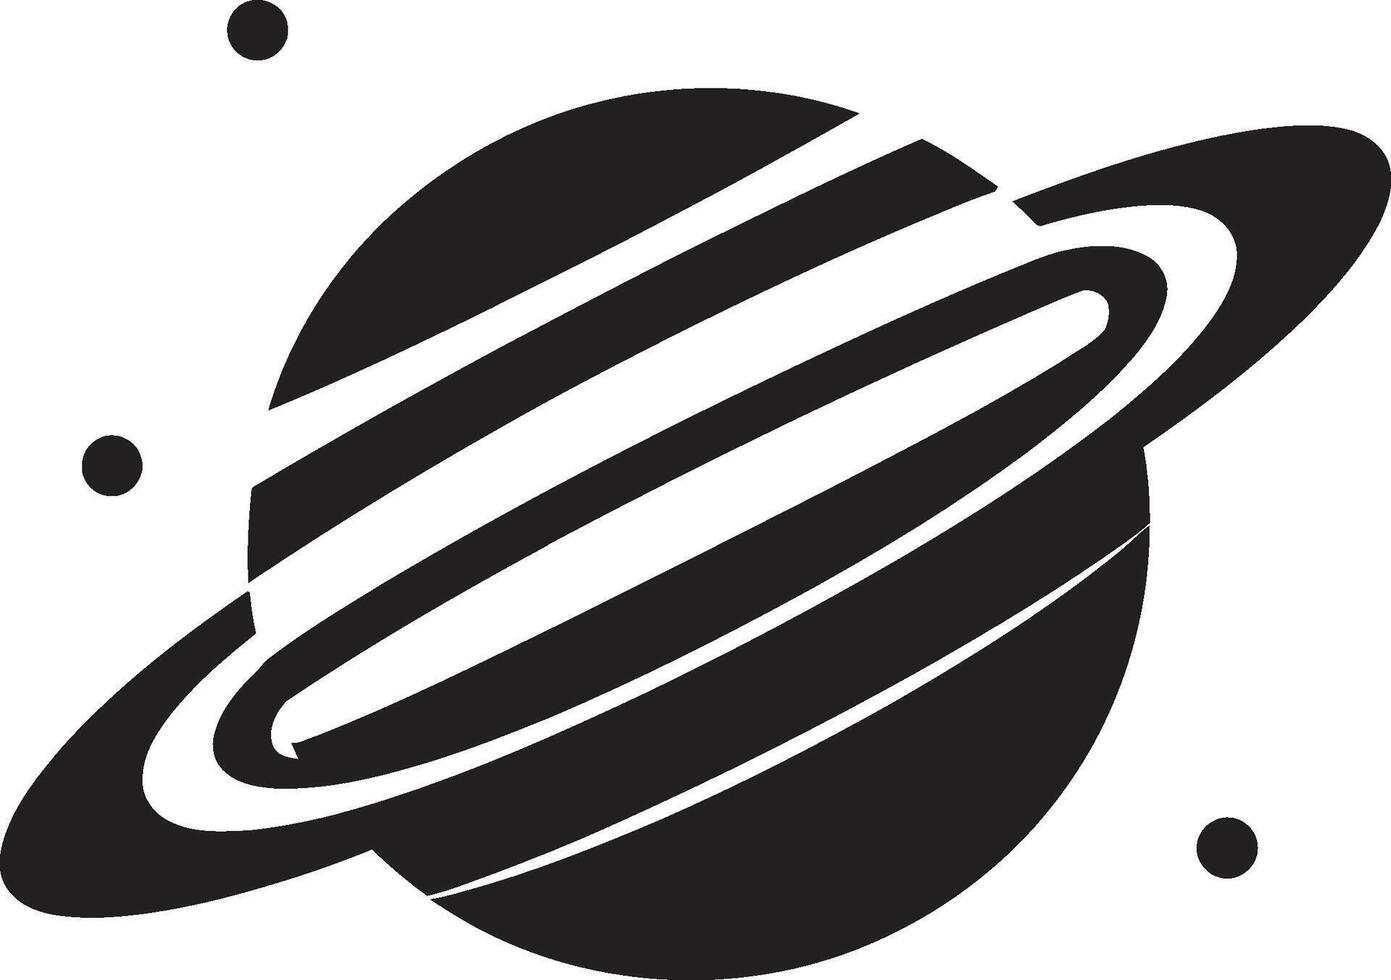 astral domän avtäckt logotyp design galaktisk Evolution avslöjade ikoniska logotyp emblem vektor